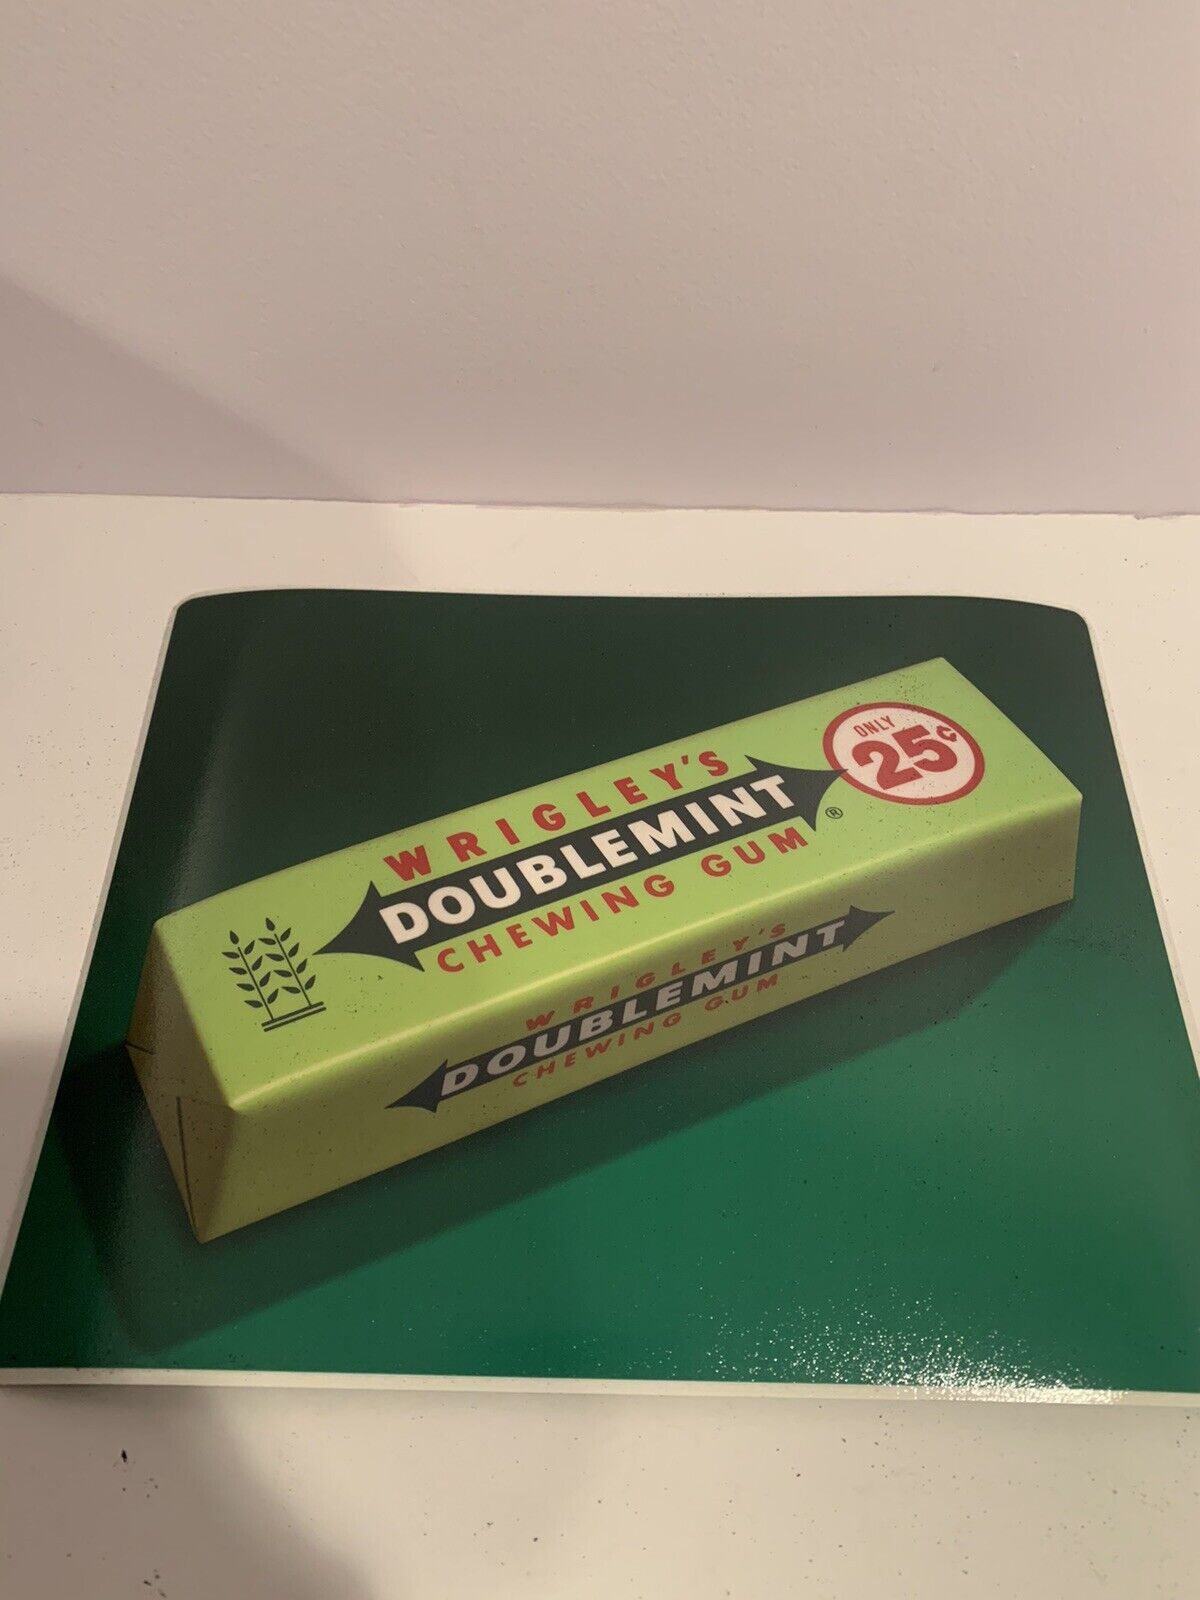 Vintage Wrigley’s Doublemint Gum Change Mat Advertisement